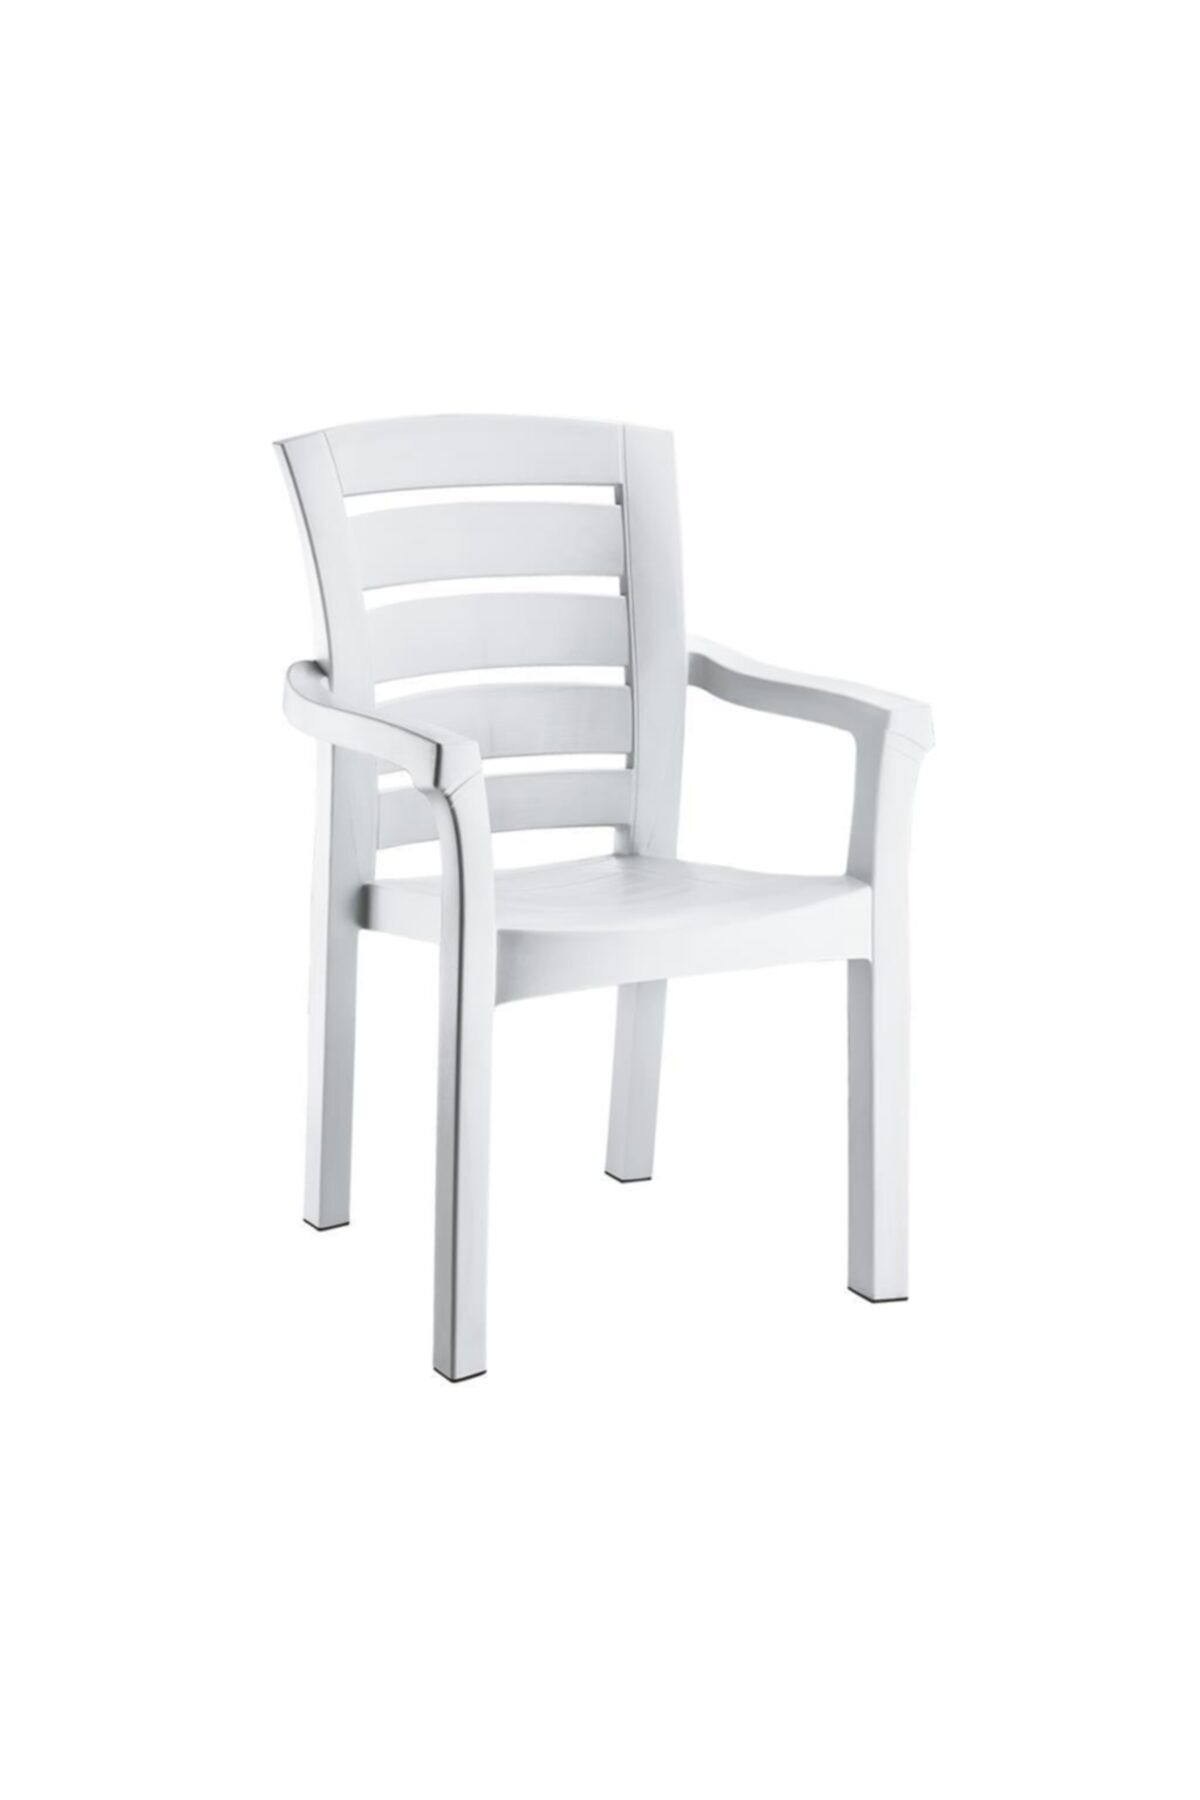 Irak Plastik Holiday Didim Sandalye Beyaz Hk-510